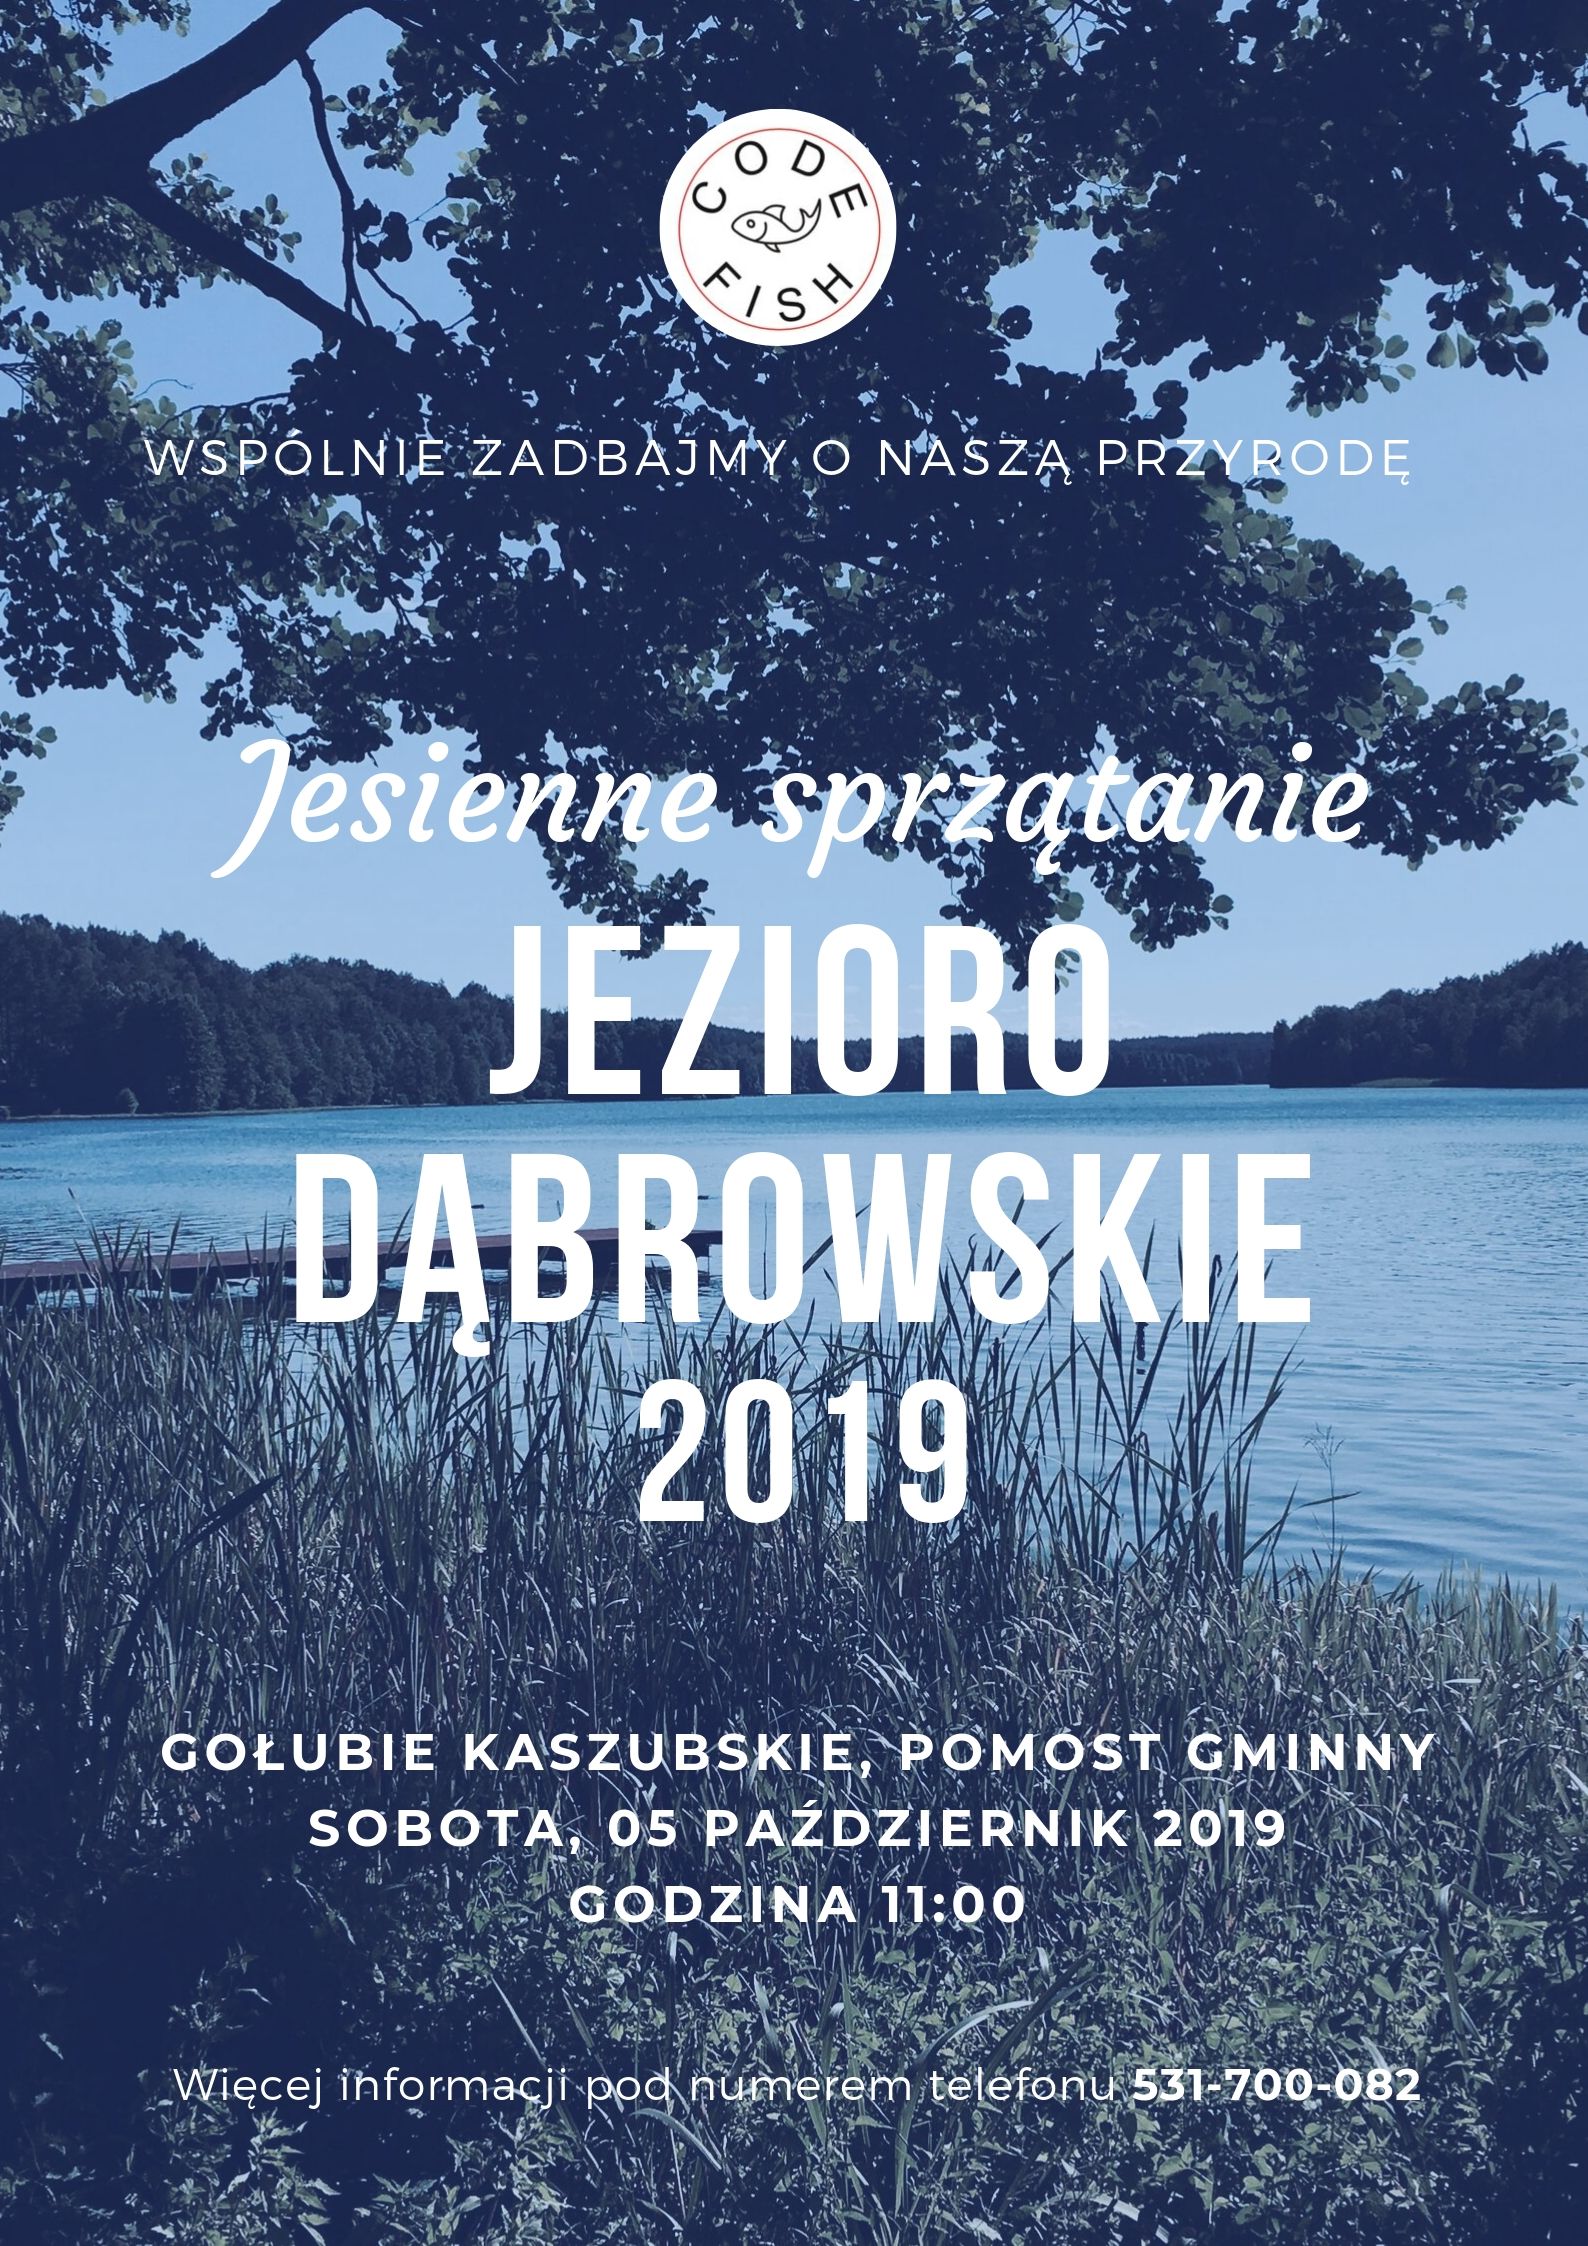 Jesienne sprzątanie na jeziorze Dąbrowskie w Gołubiu Kaszubskim